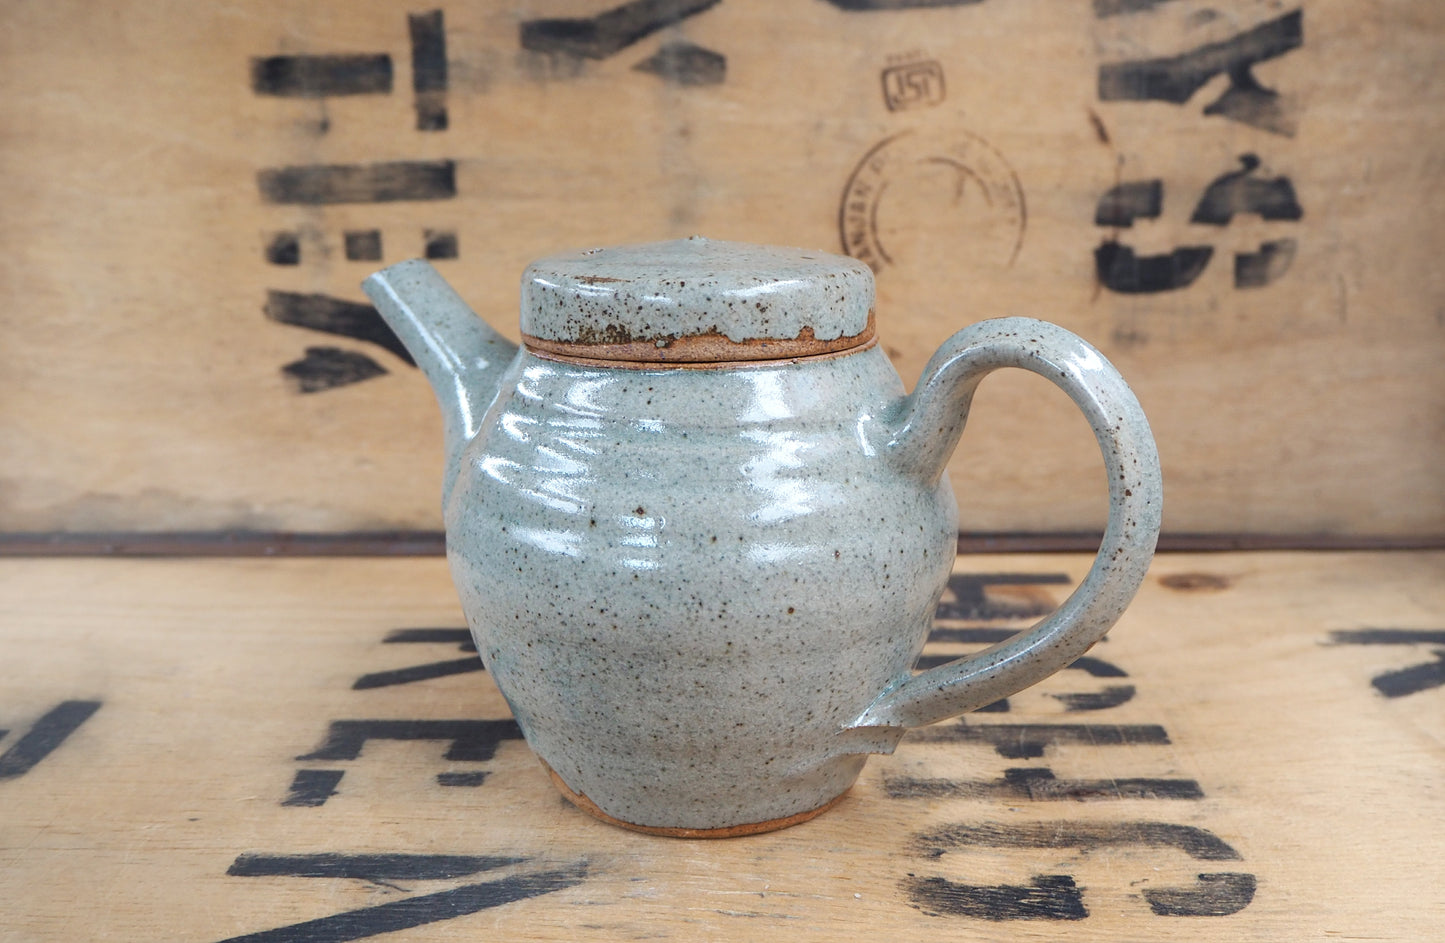 Blue Ash Teapot (1-2 cup) by Jack Welbourne